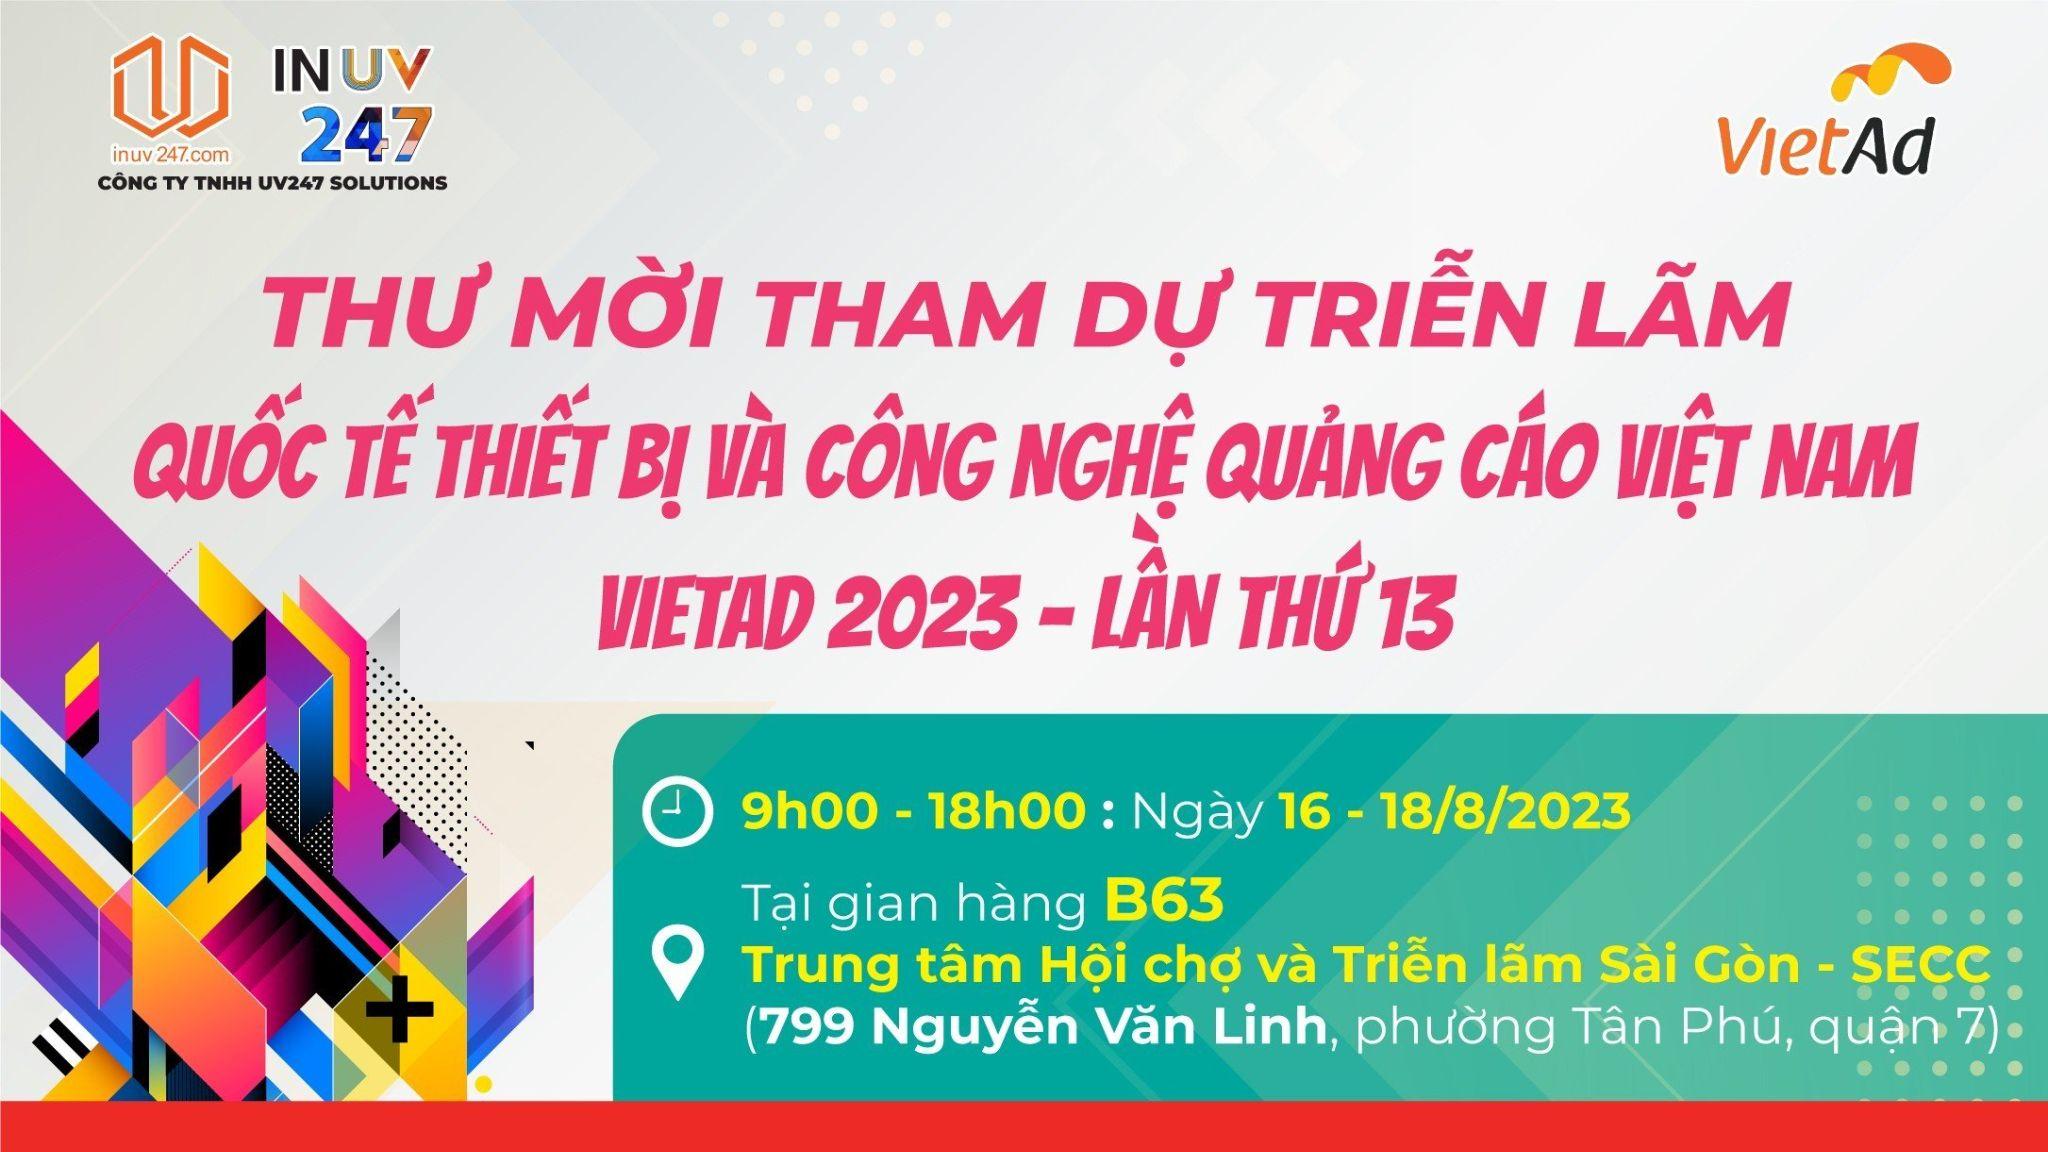 Công ty TNHH UV247 SOLUTIONS - Giải pháp in ấn uy tín dành cho thương hiệu Việt - 5